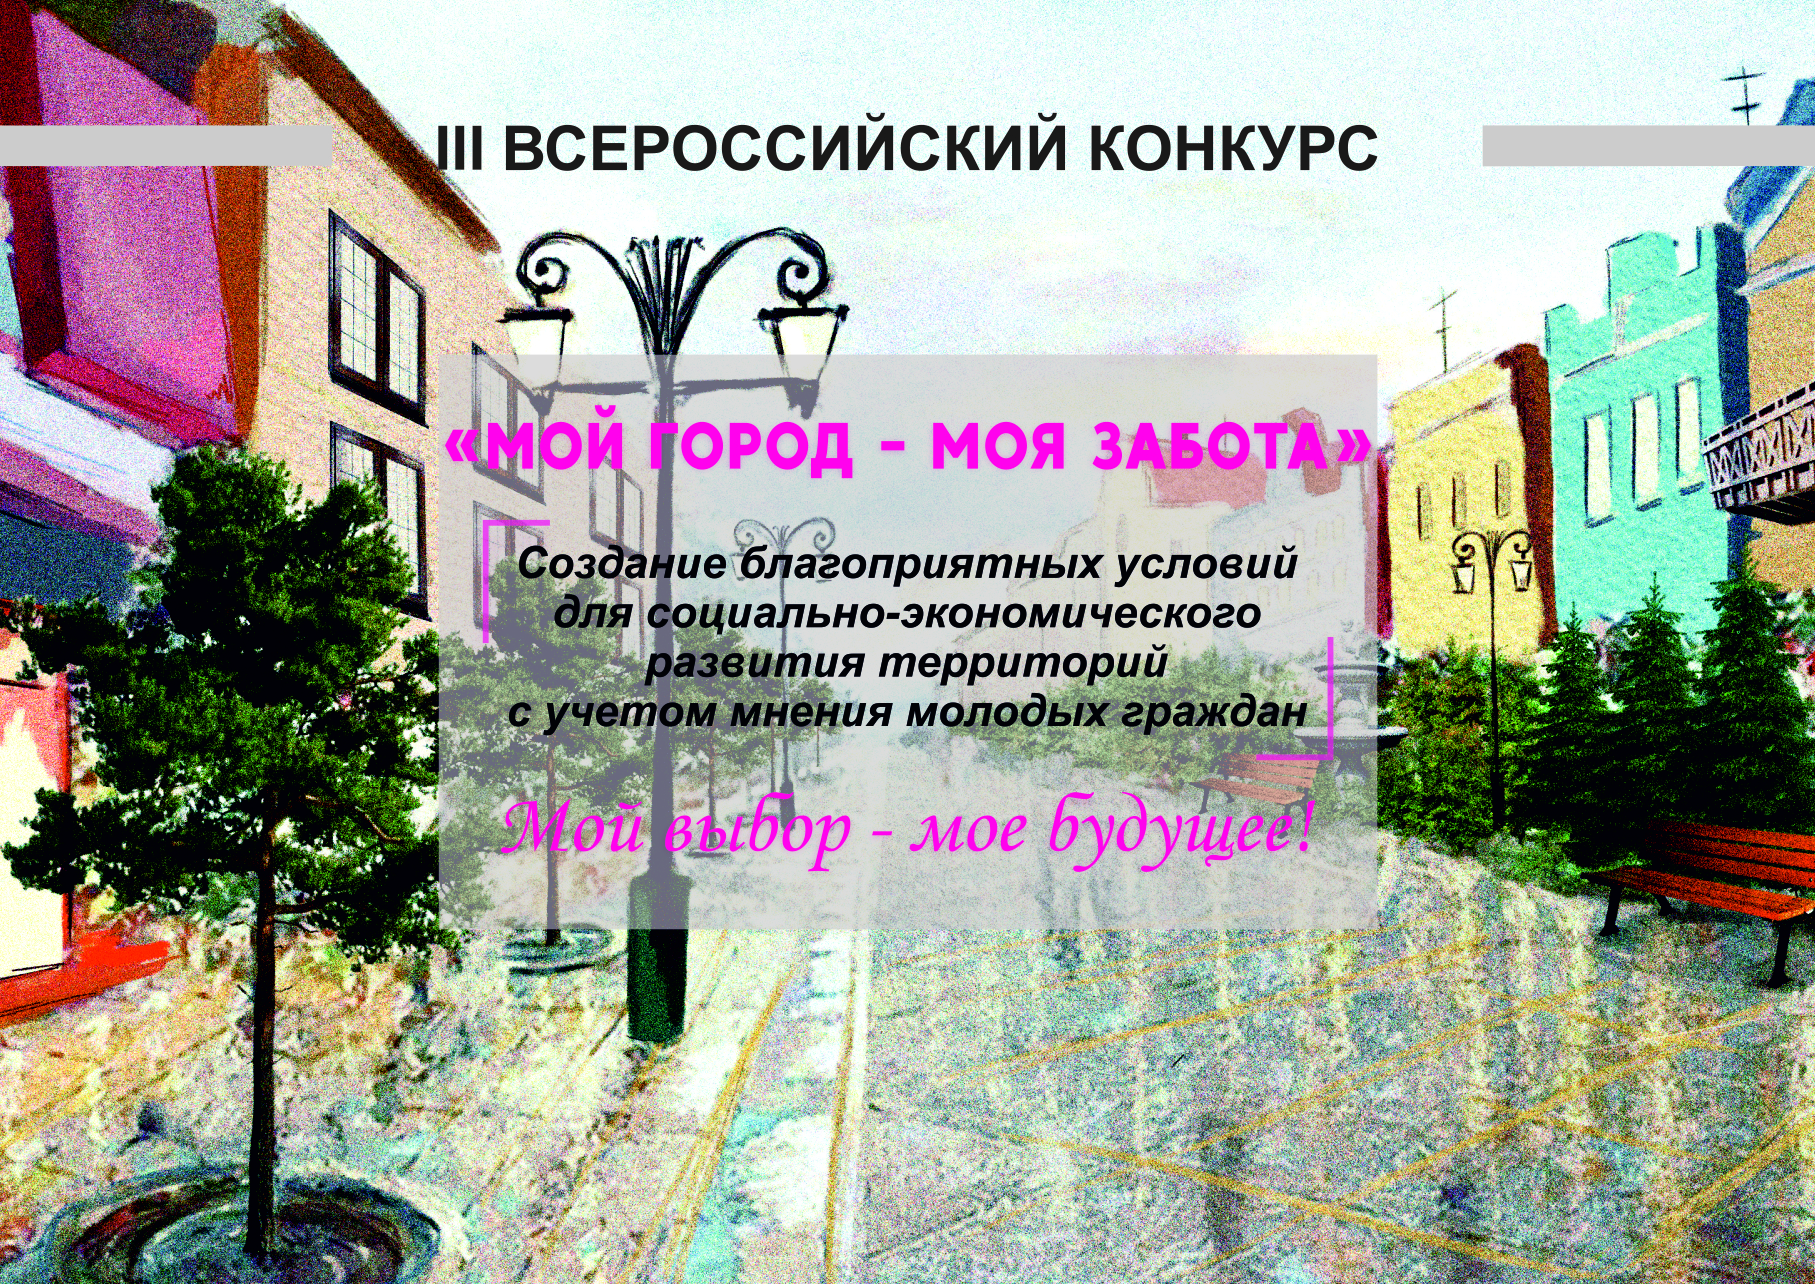 III Всероссийский конкурс «Мой город — моя забота».